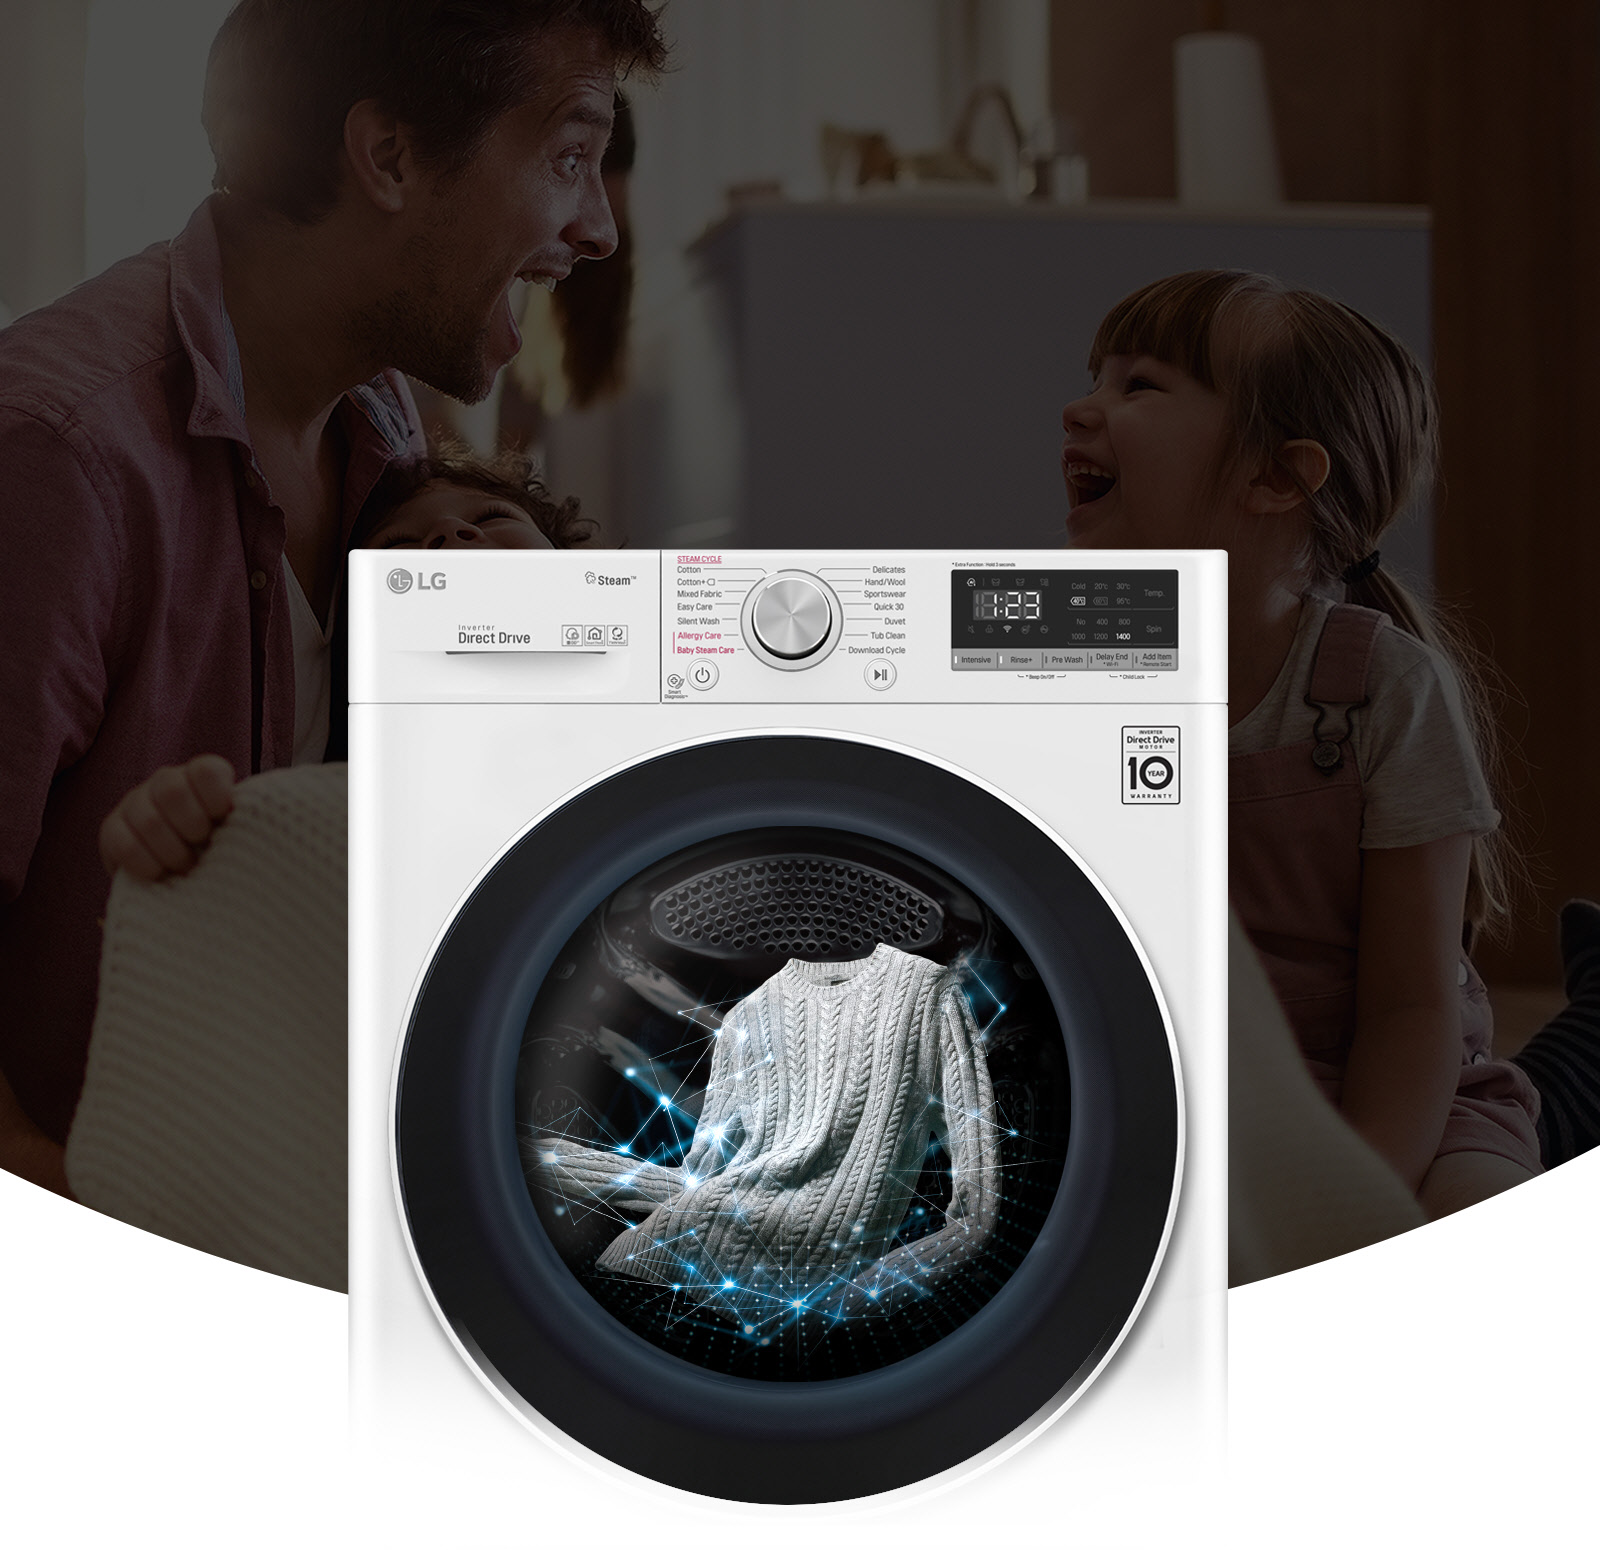 Перед темным изображением, на котором отец и дочь улыбаются, показано изображение стиральной машины. Машина в работе, стирка белья.